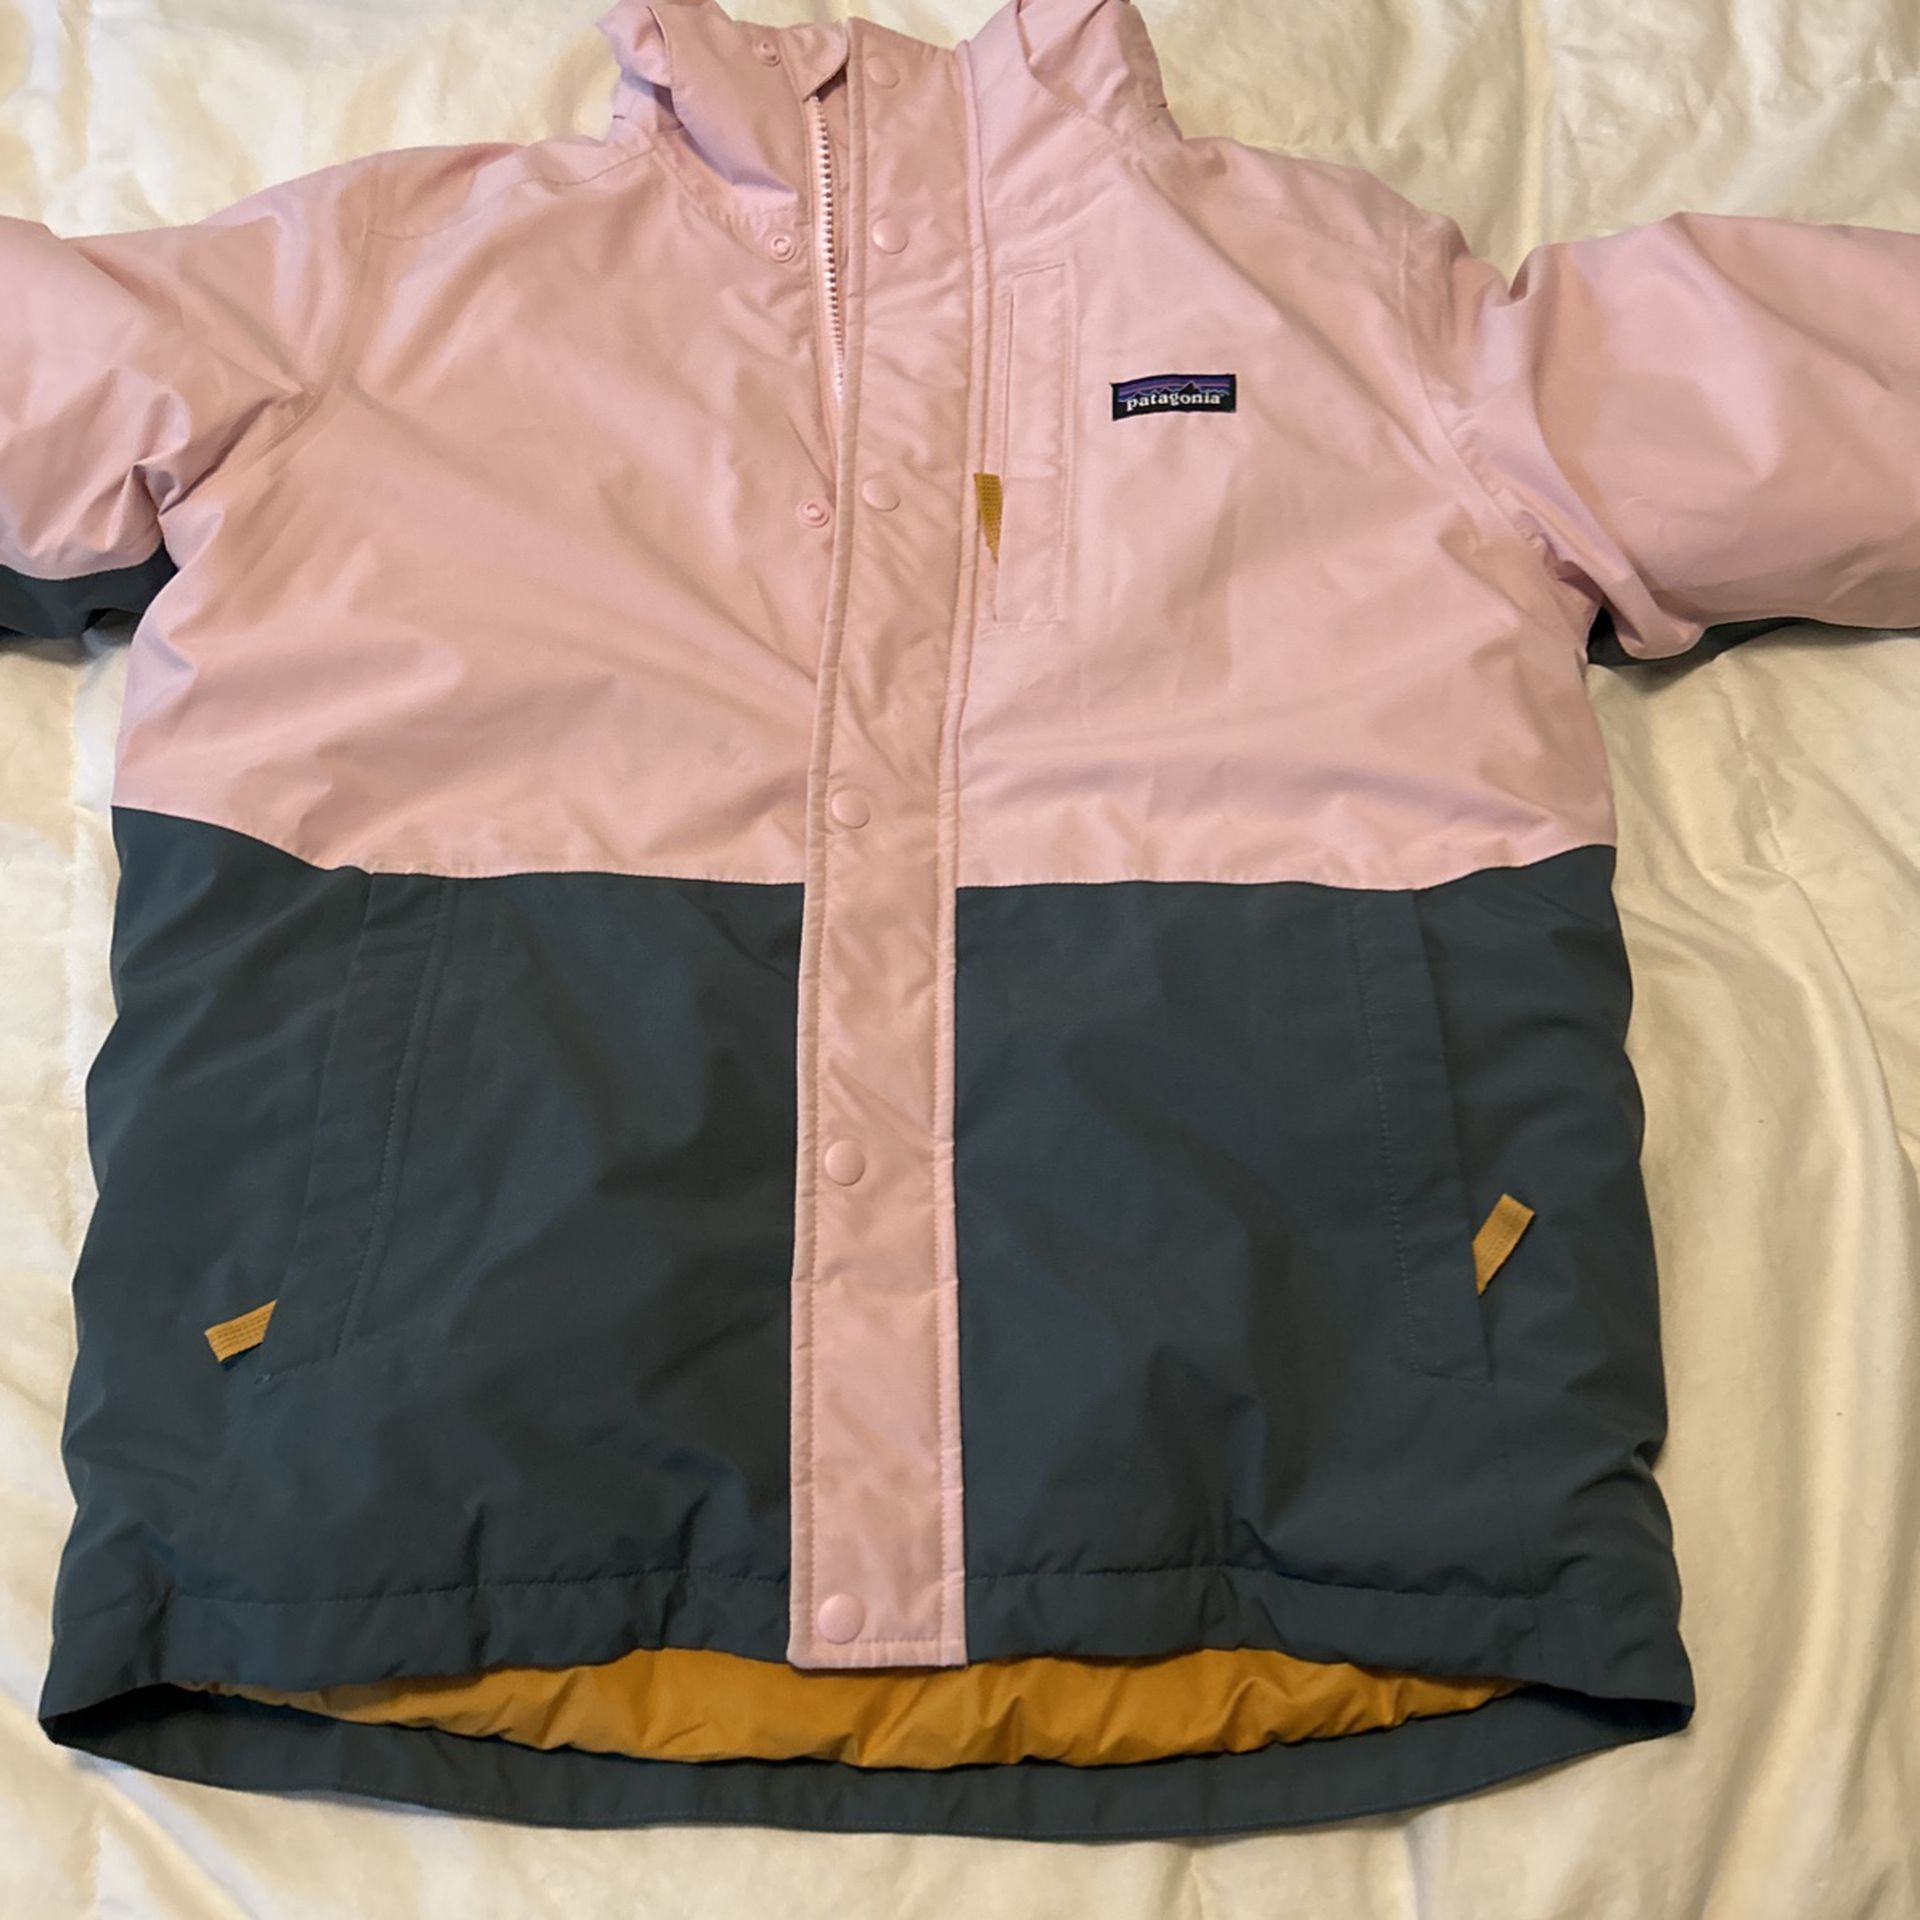 Patagonia Jacket Size 10 Girls